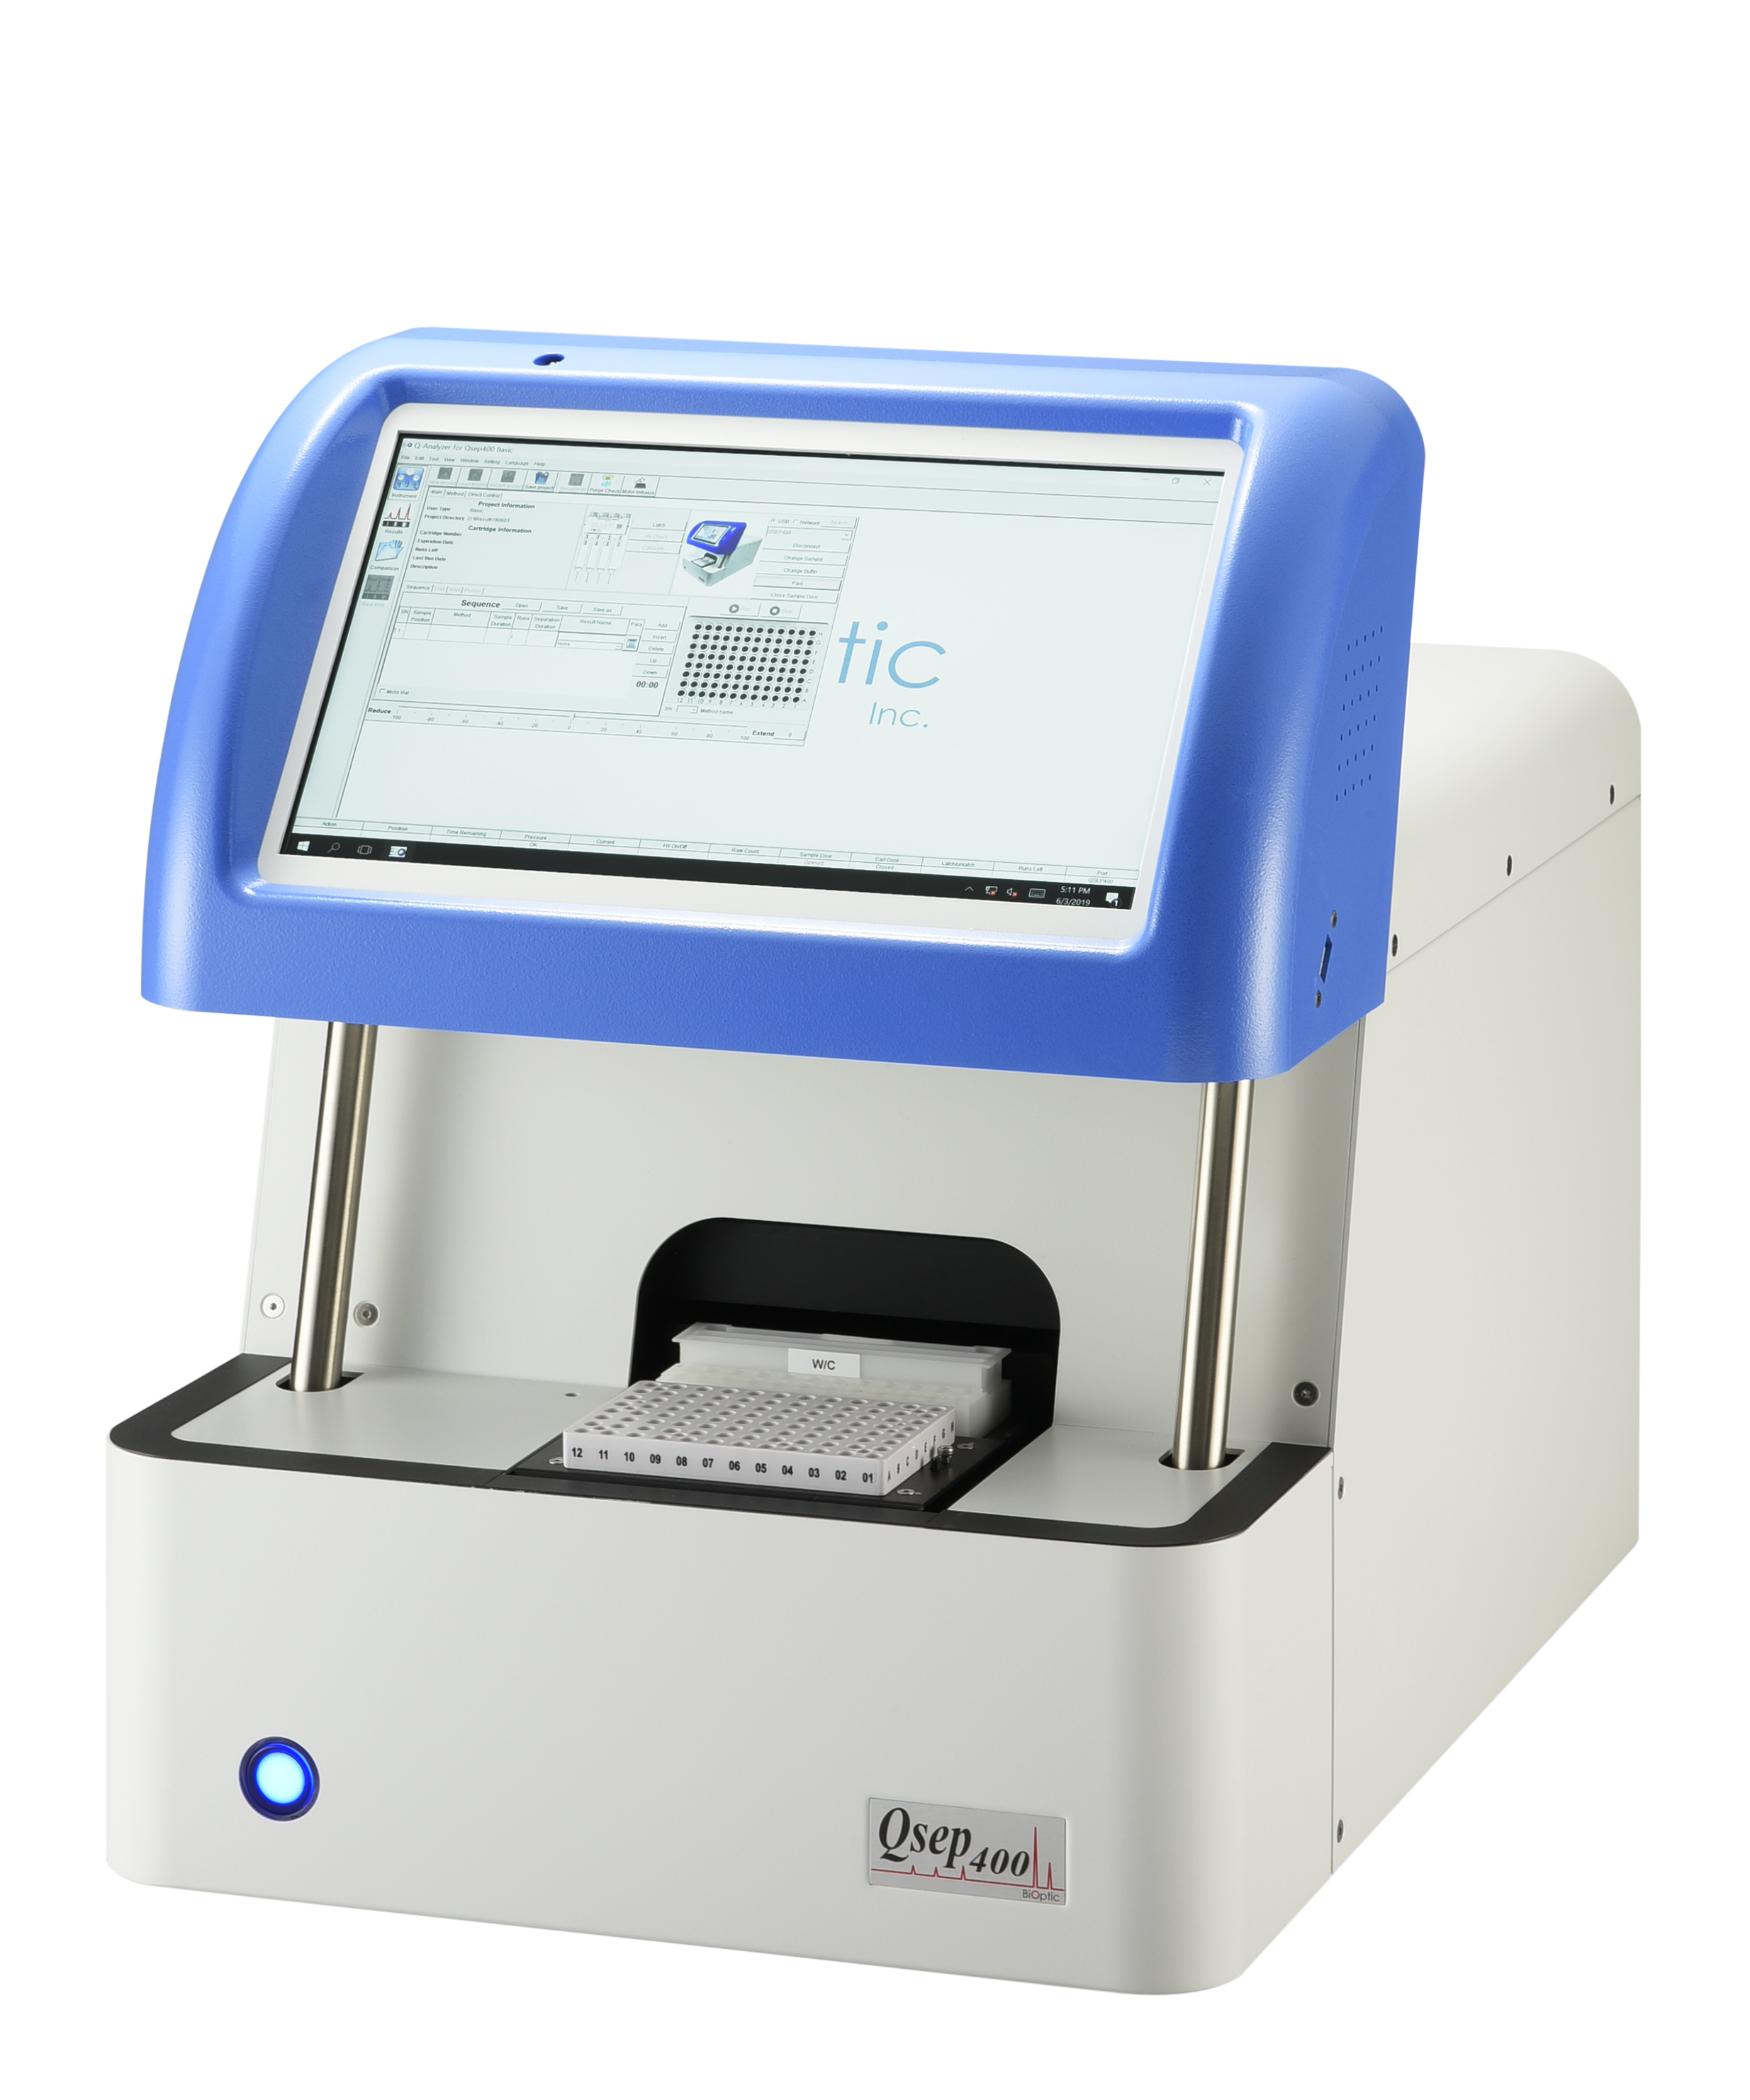 Qsep400高通量生物片段分析仪